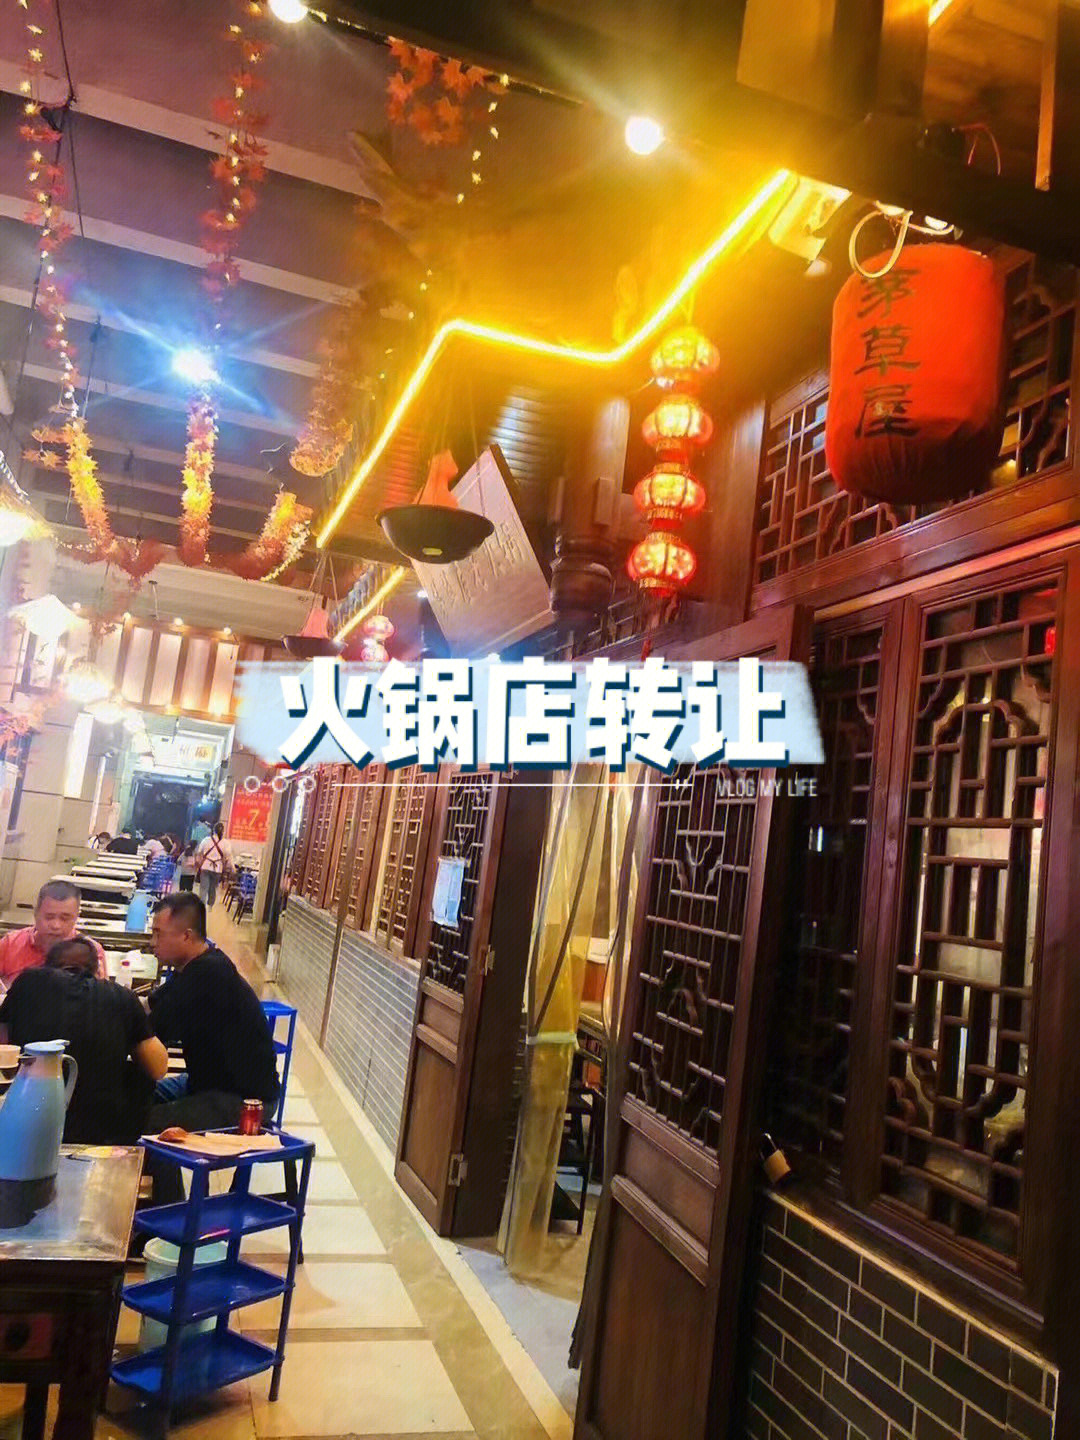 门口好吃街火锅店96具体位置:重庆大学城重庆科技学院西门泡泡街